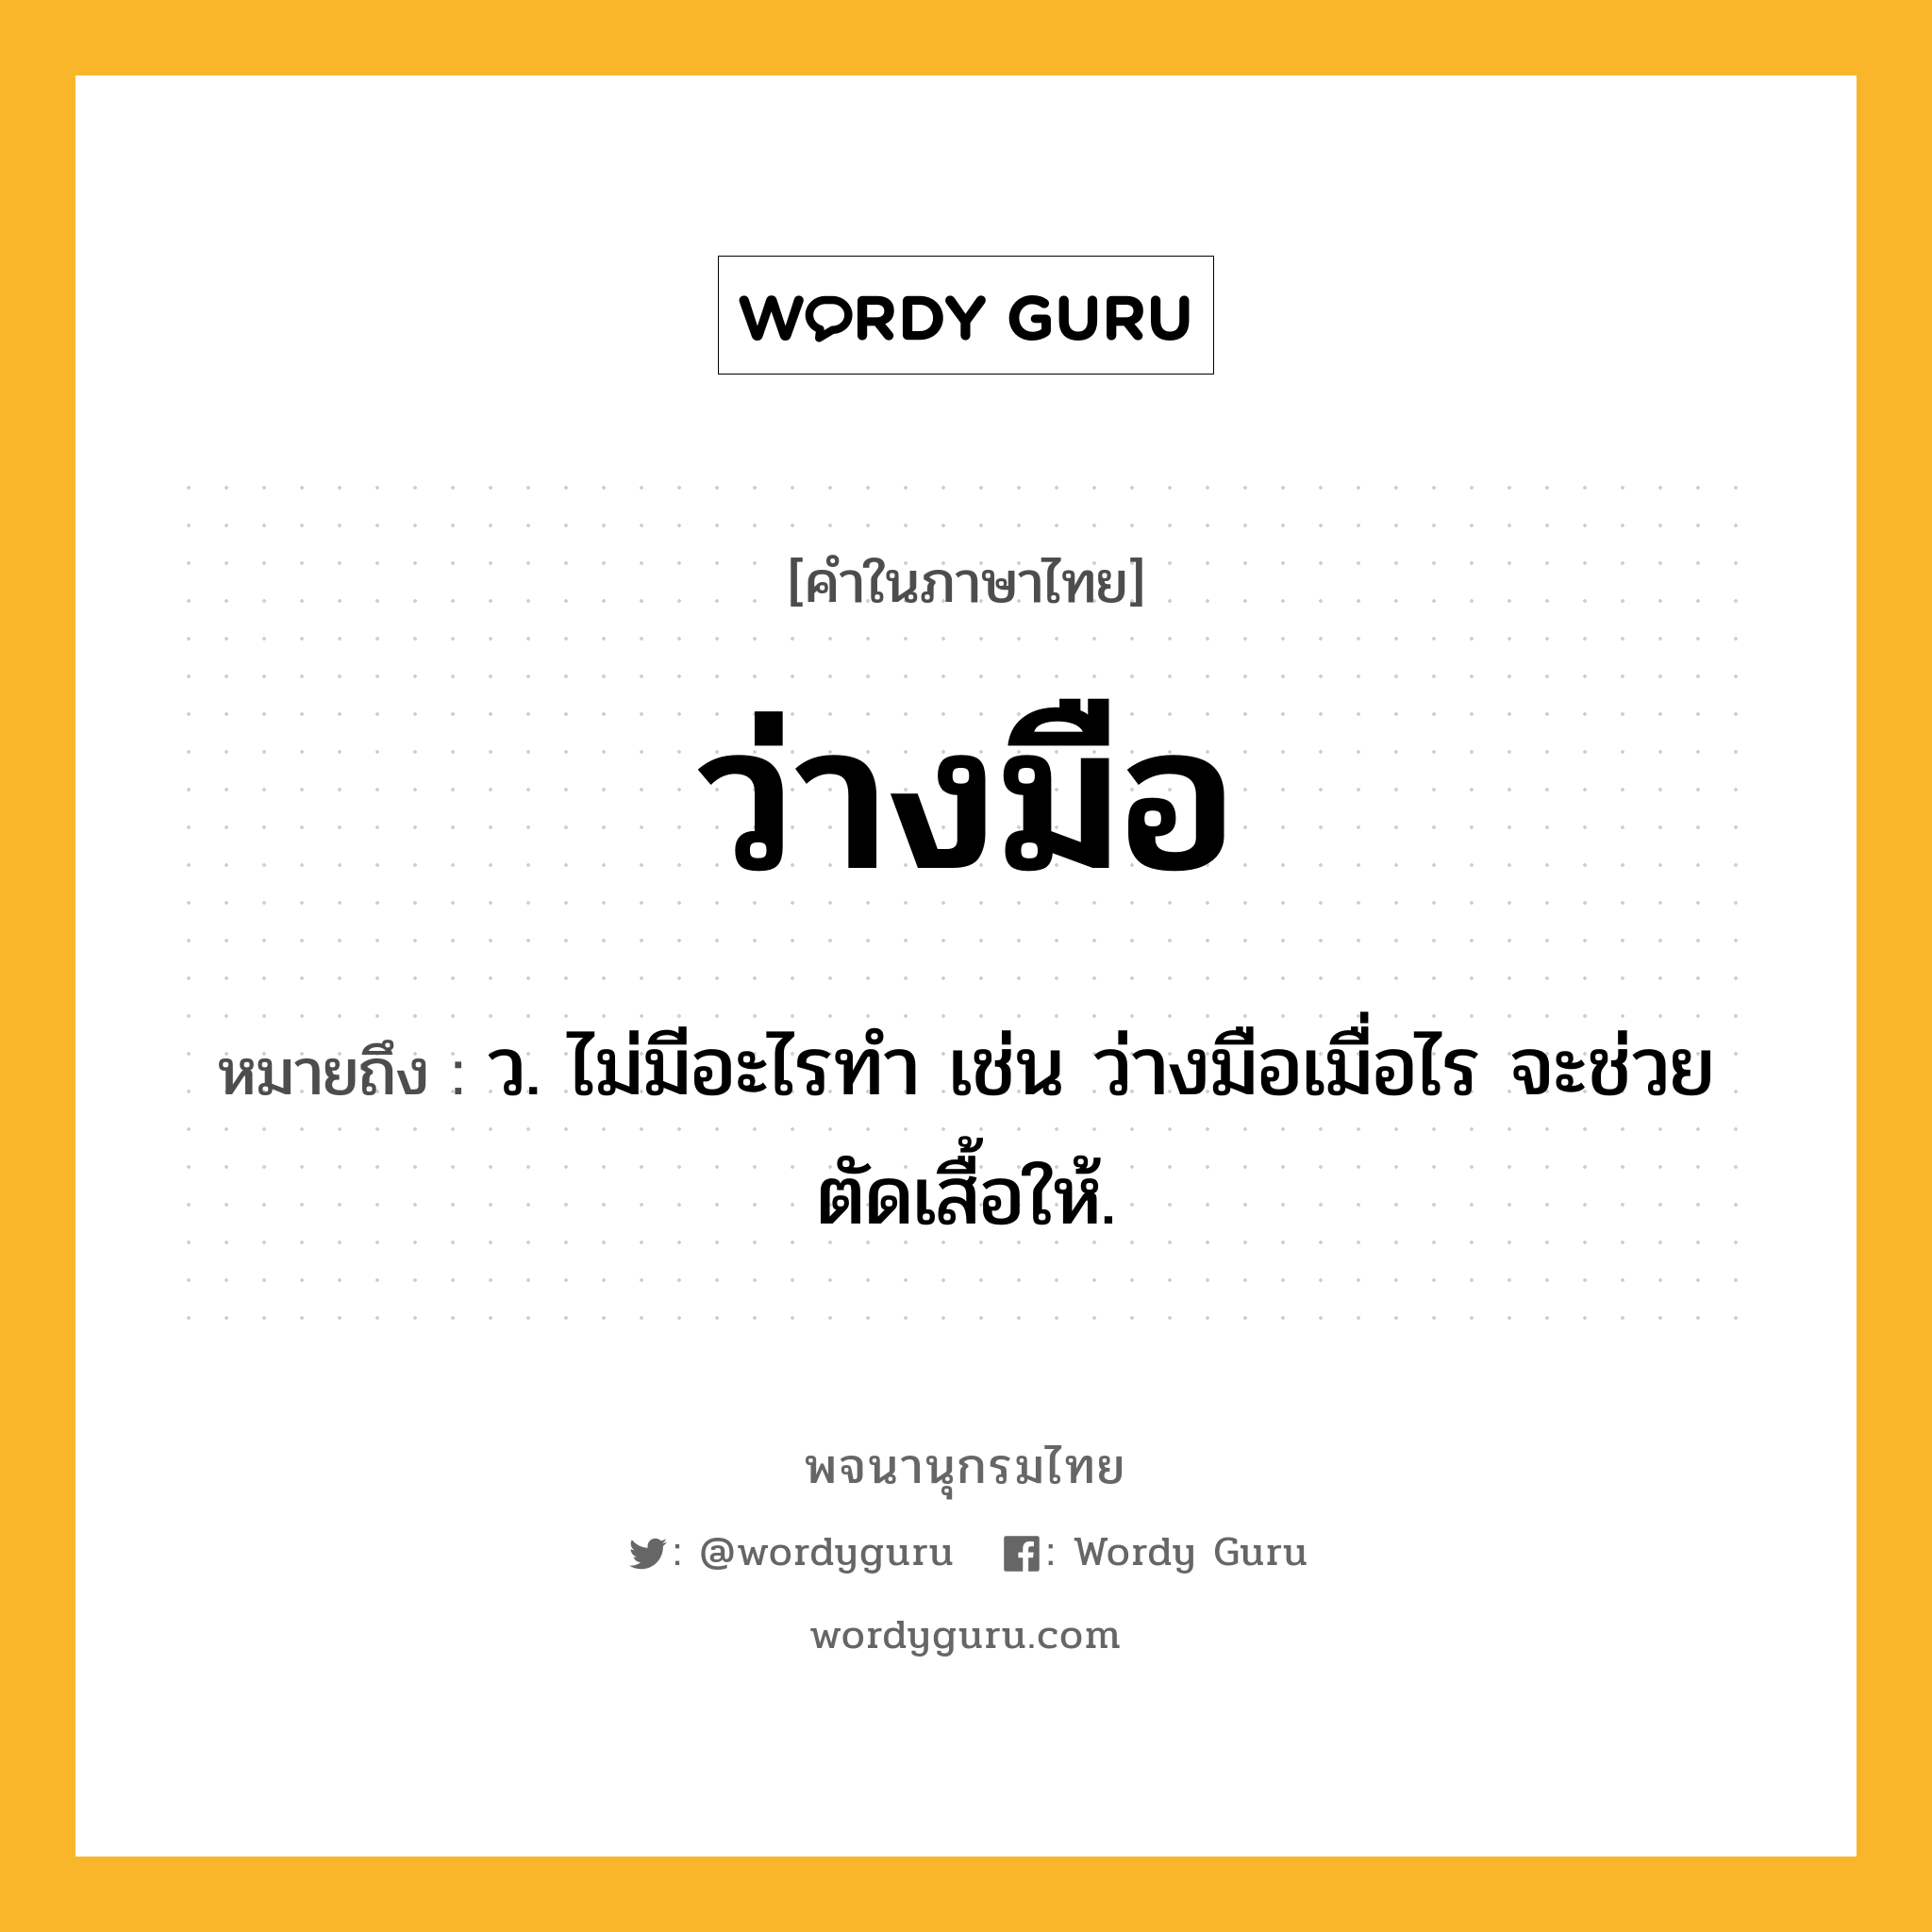 ว่างมือ ความหมาย หมายถึงอะไร?, คำในภาษาไทย ว่างมือ หมายถึง ว. ไม่มีอะไรทำ เช่น ว่างมือเมื่อไร จะช่วยตัดเสื้อให้.